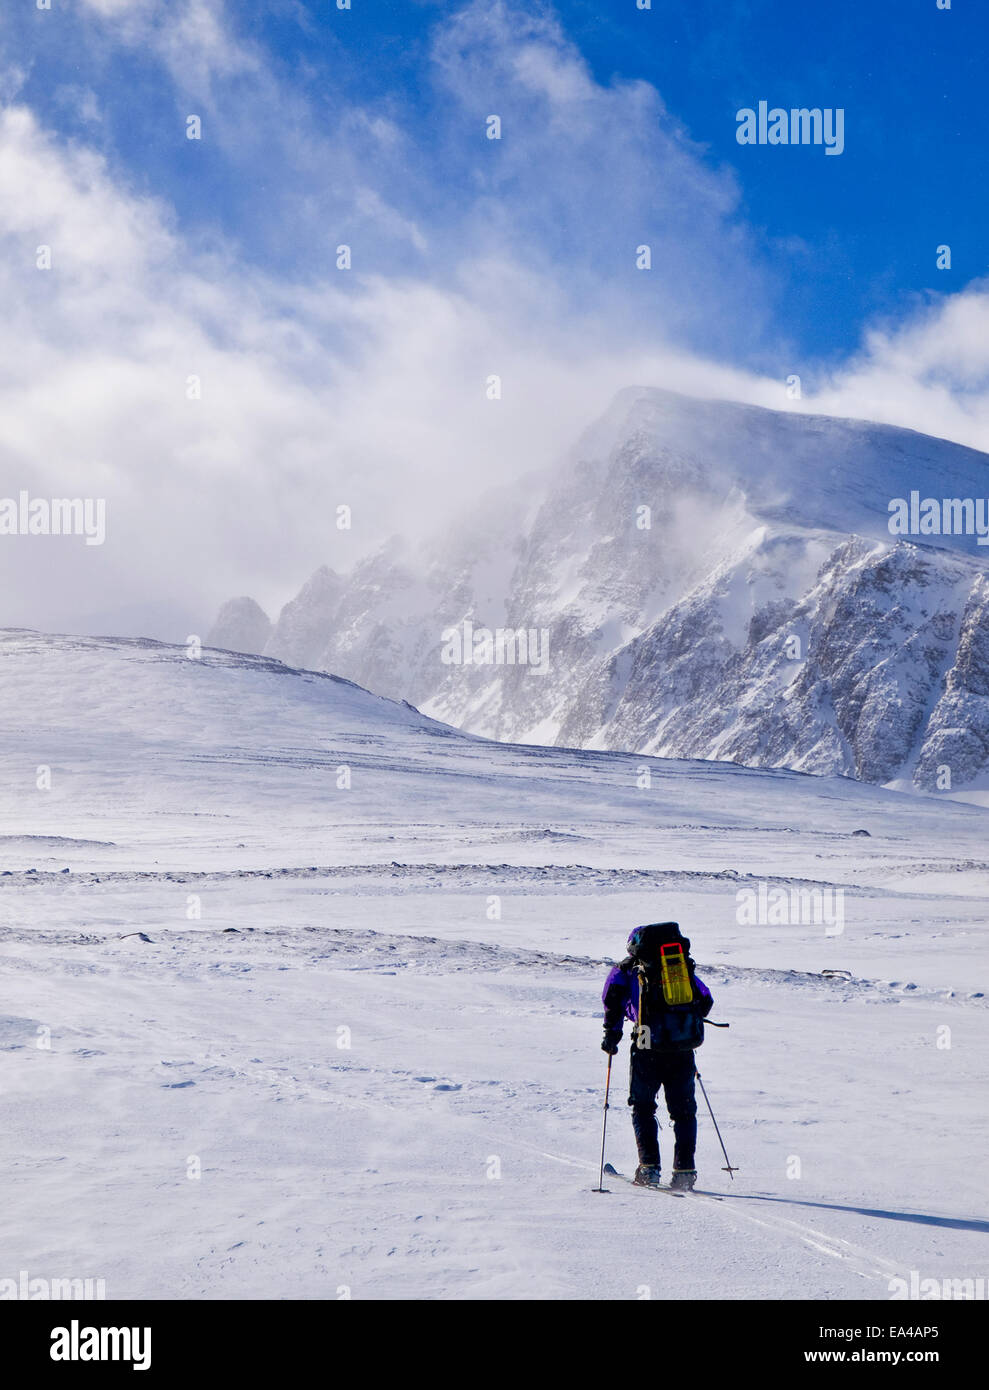 Male skier Ski touring in Rondane mountians, Norway Stock Photo